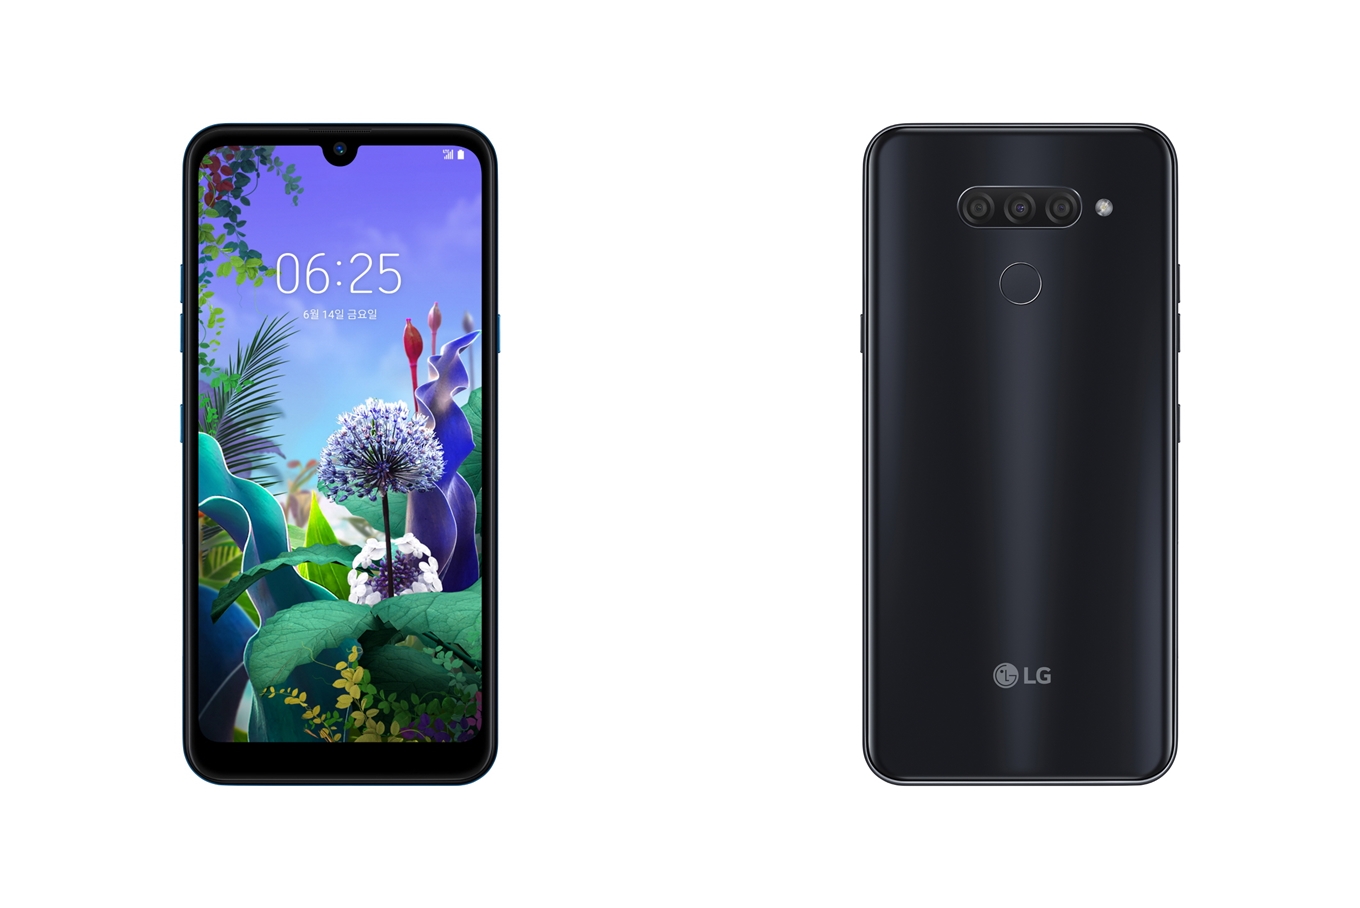 LG전자가 14일 국내 이동통신 3사를 통해 실속형 스마트폰 LG X6(출고가: 349,800원)를 출시한다. LG X6는 후면 트리플 카메라, 64GB 저장공간, 3,500mAh 대용량 배터리까지 갖춰 전문가 수준의 사진을 손쉽게 찍고 넉넉하게 즐길 수 있는 게 특징이다. 10일 모델이 서울시 여의도에서 LG X6를 소개하고 있다. 